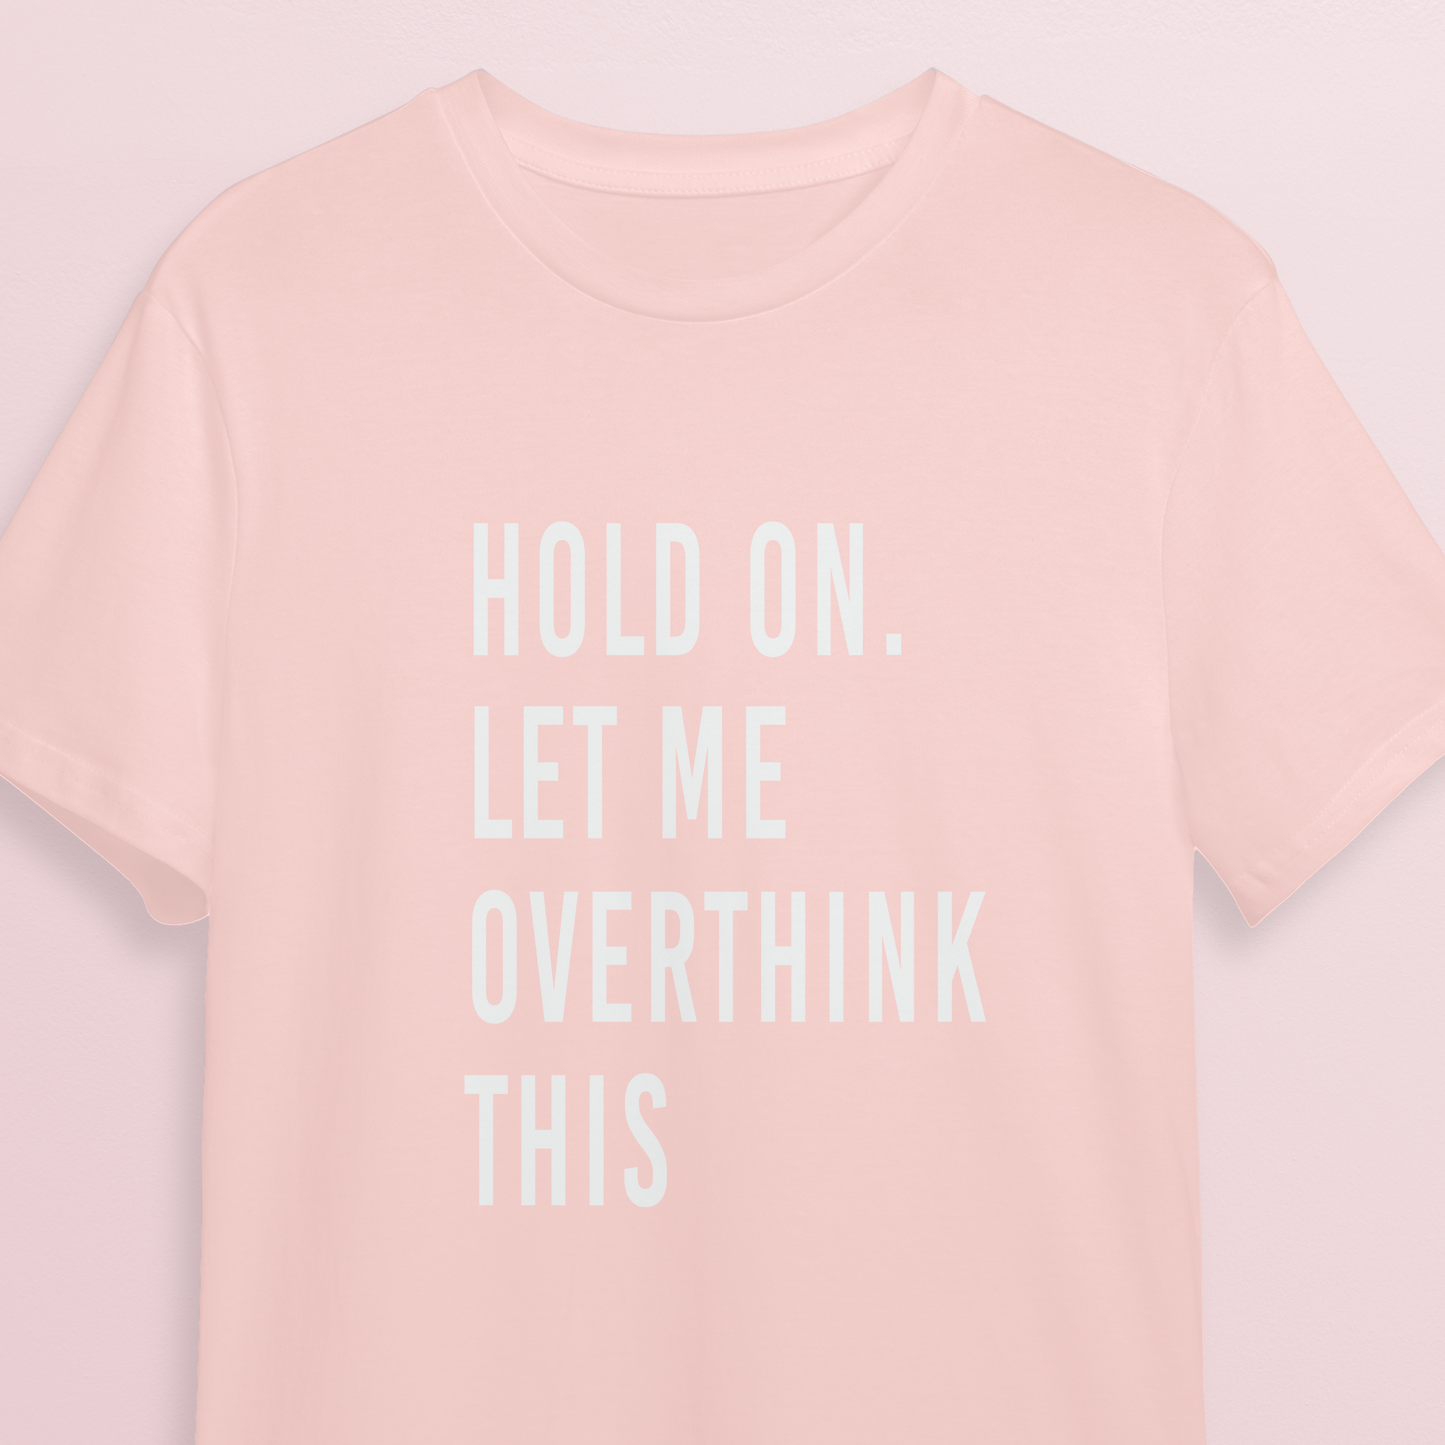 T-shirt - Let me overthink - Soft rose